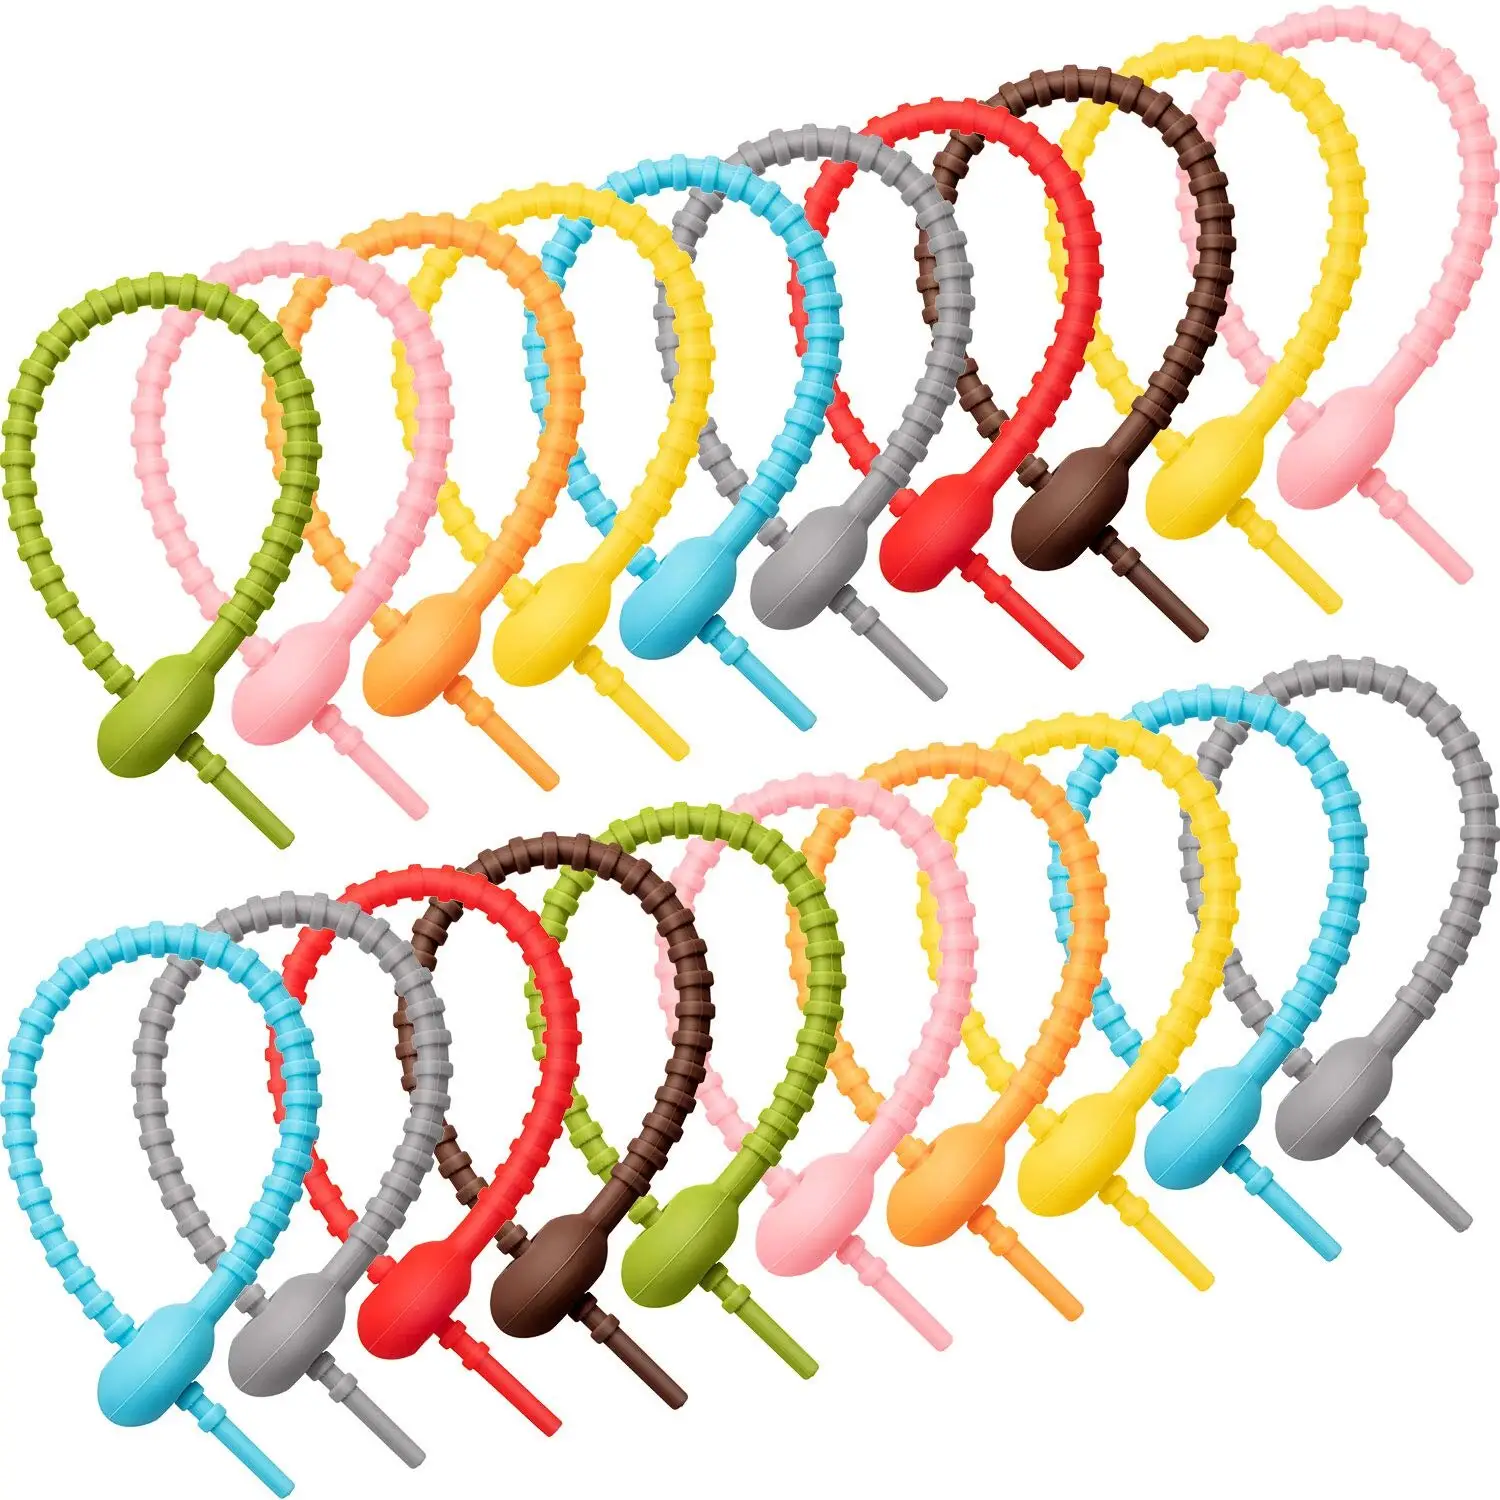 Atadura de cables de silicona reutilizable, colorida, multiusos, flexibles, para atar cables, organizador de correas